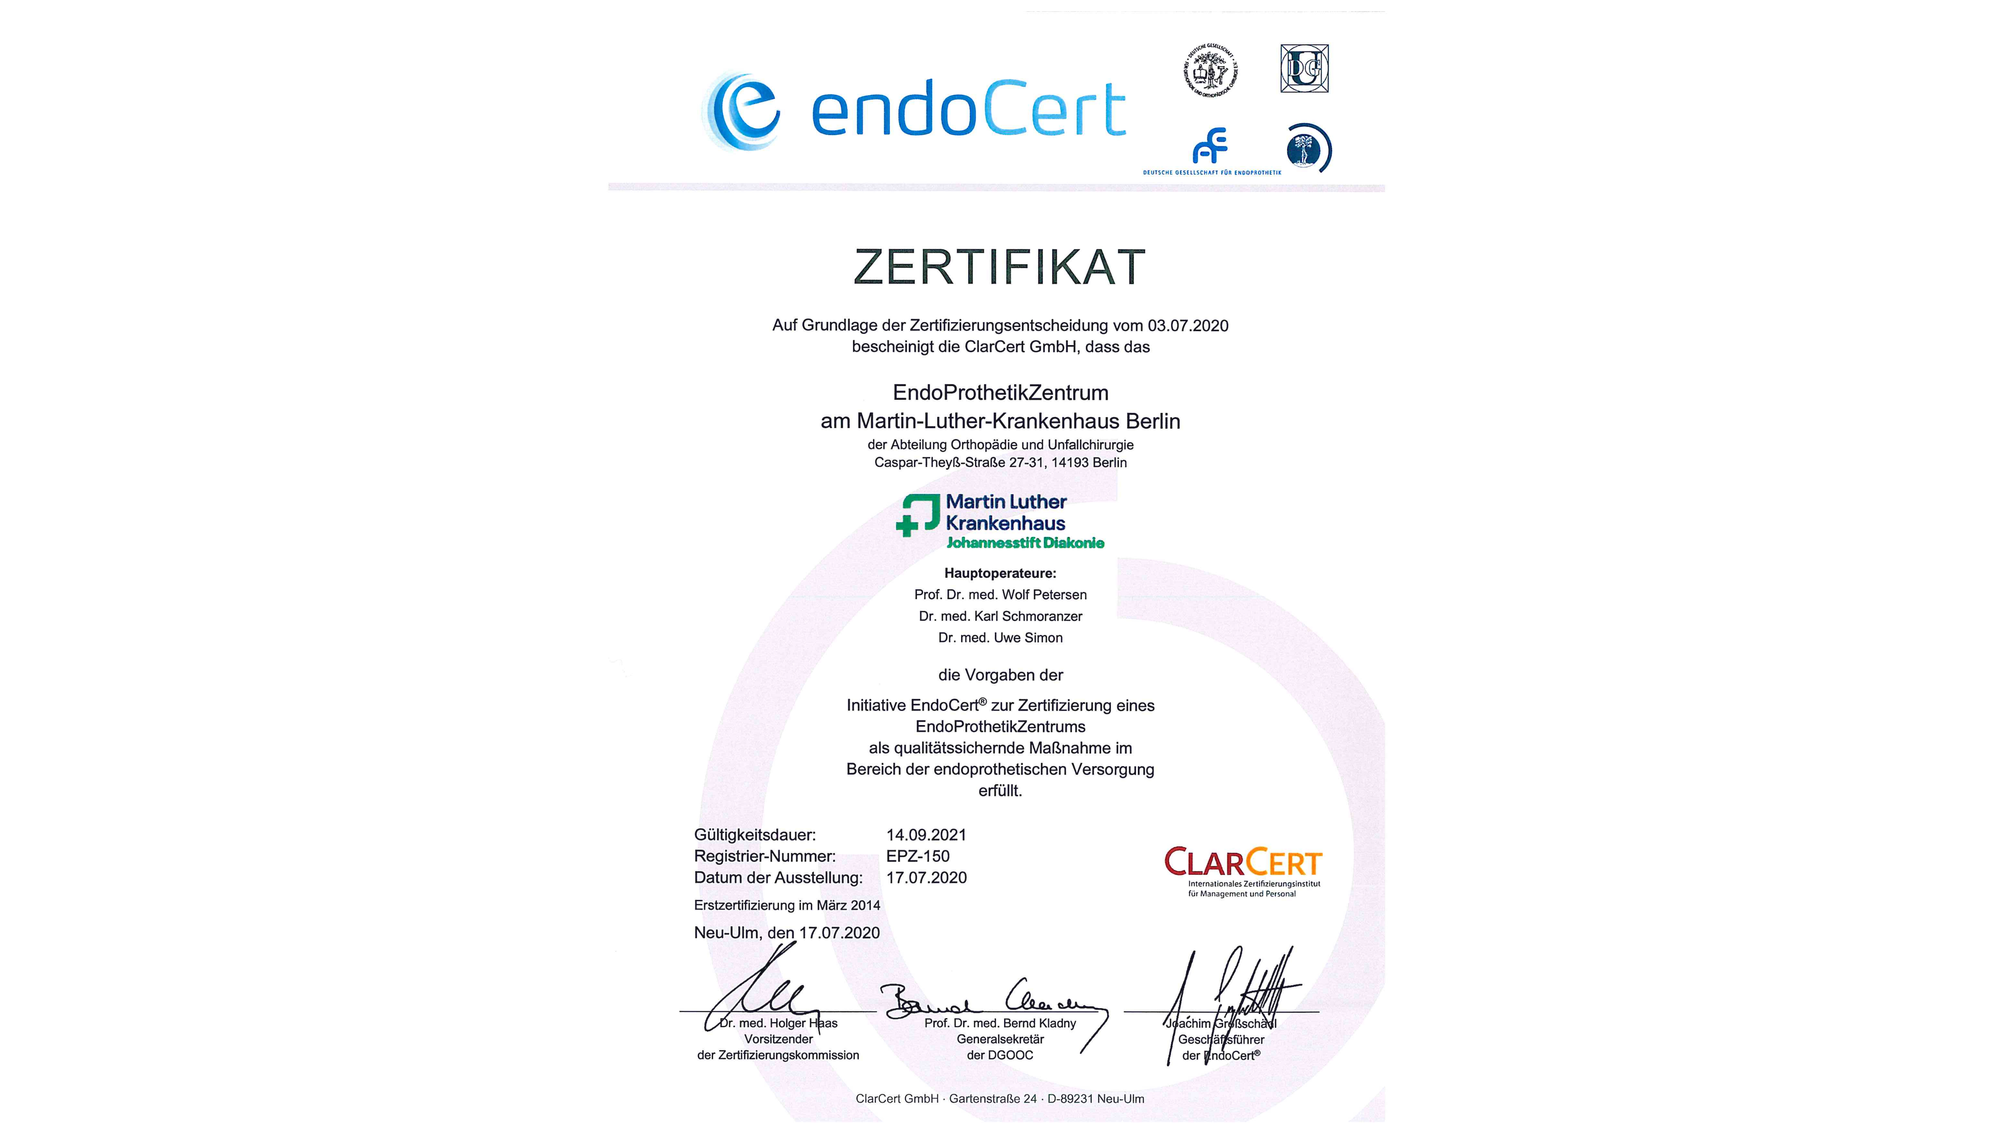 Zertifikat: Zertifiziertes Endoprothetikzentrum